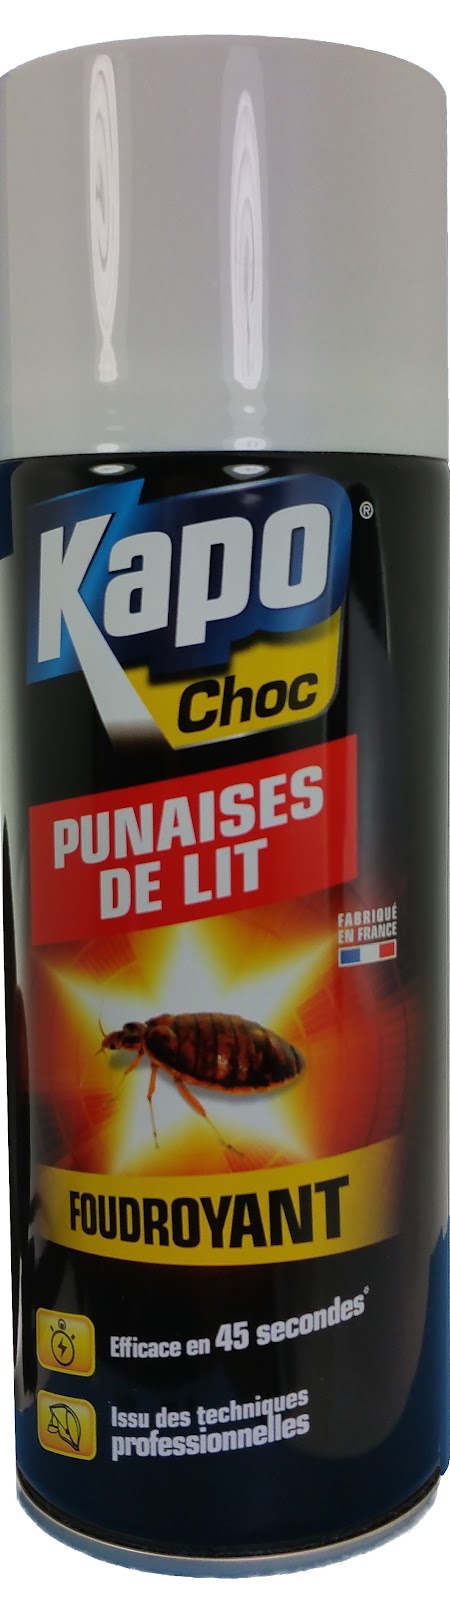 Kapo-Choc-Punaises-de-lit-400-ml